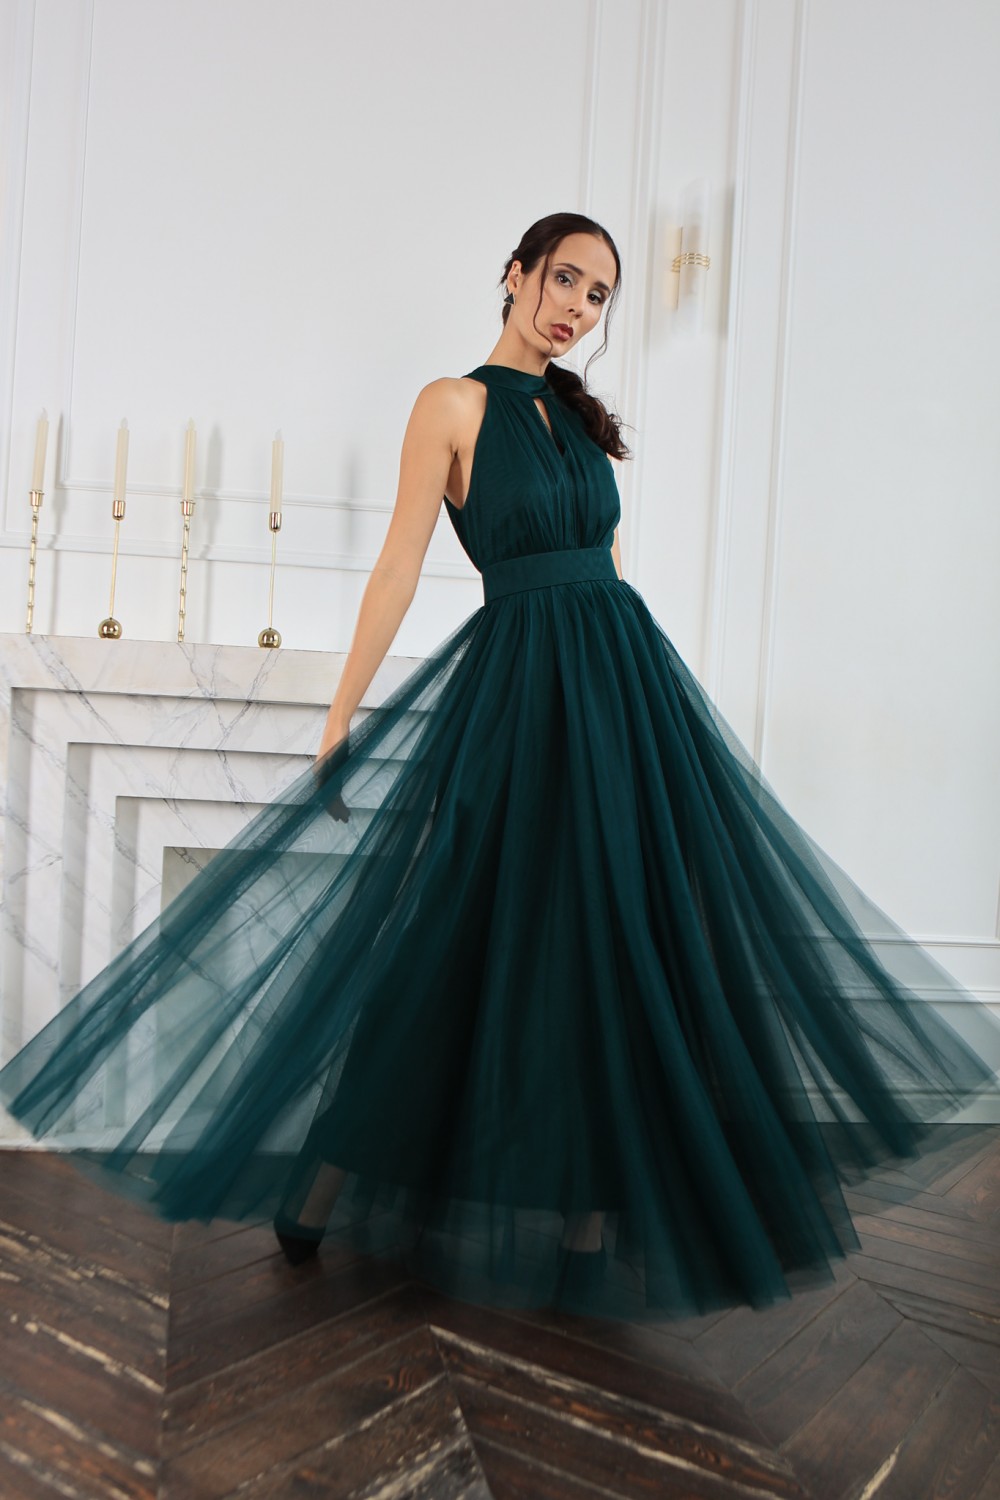 Платье из фатина: фото самых роскошных вариантов и обзор самых модных фасонов сезона